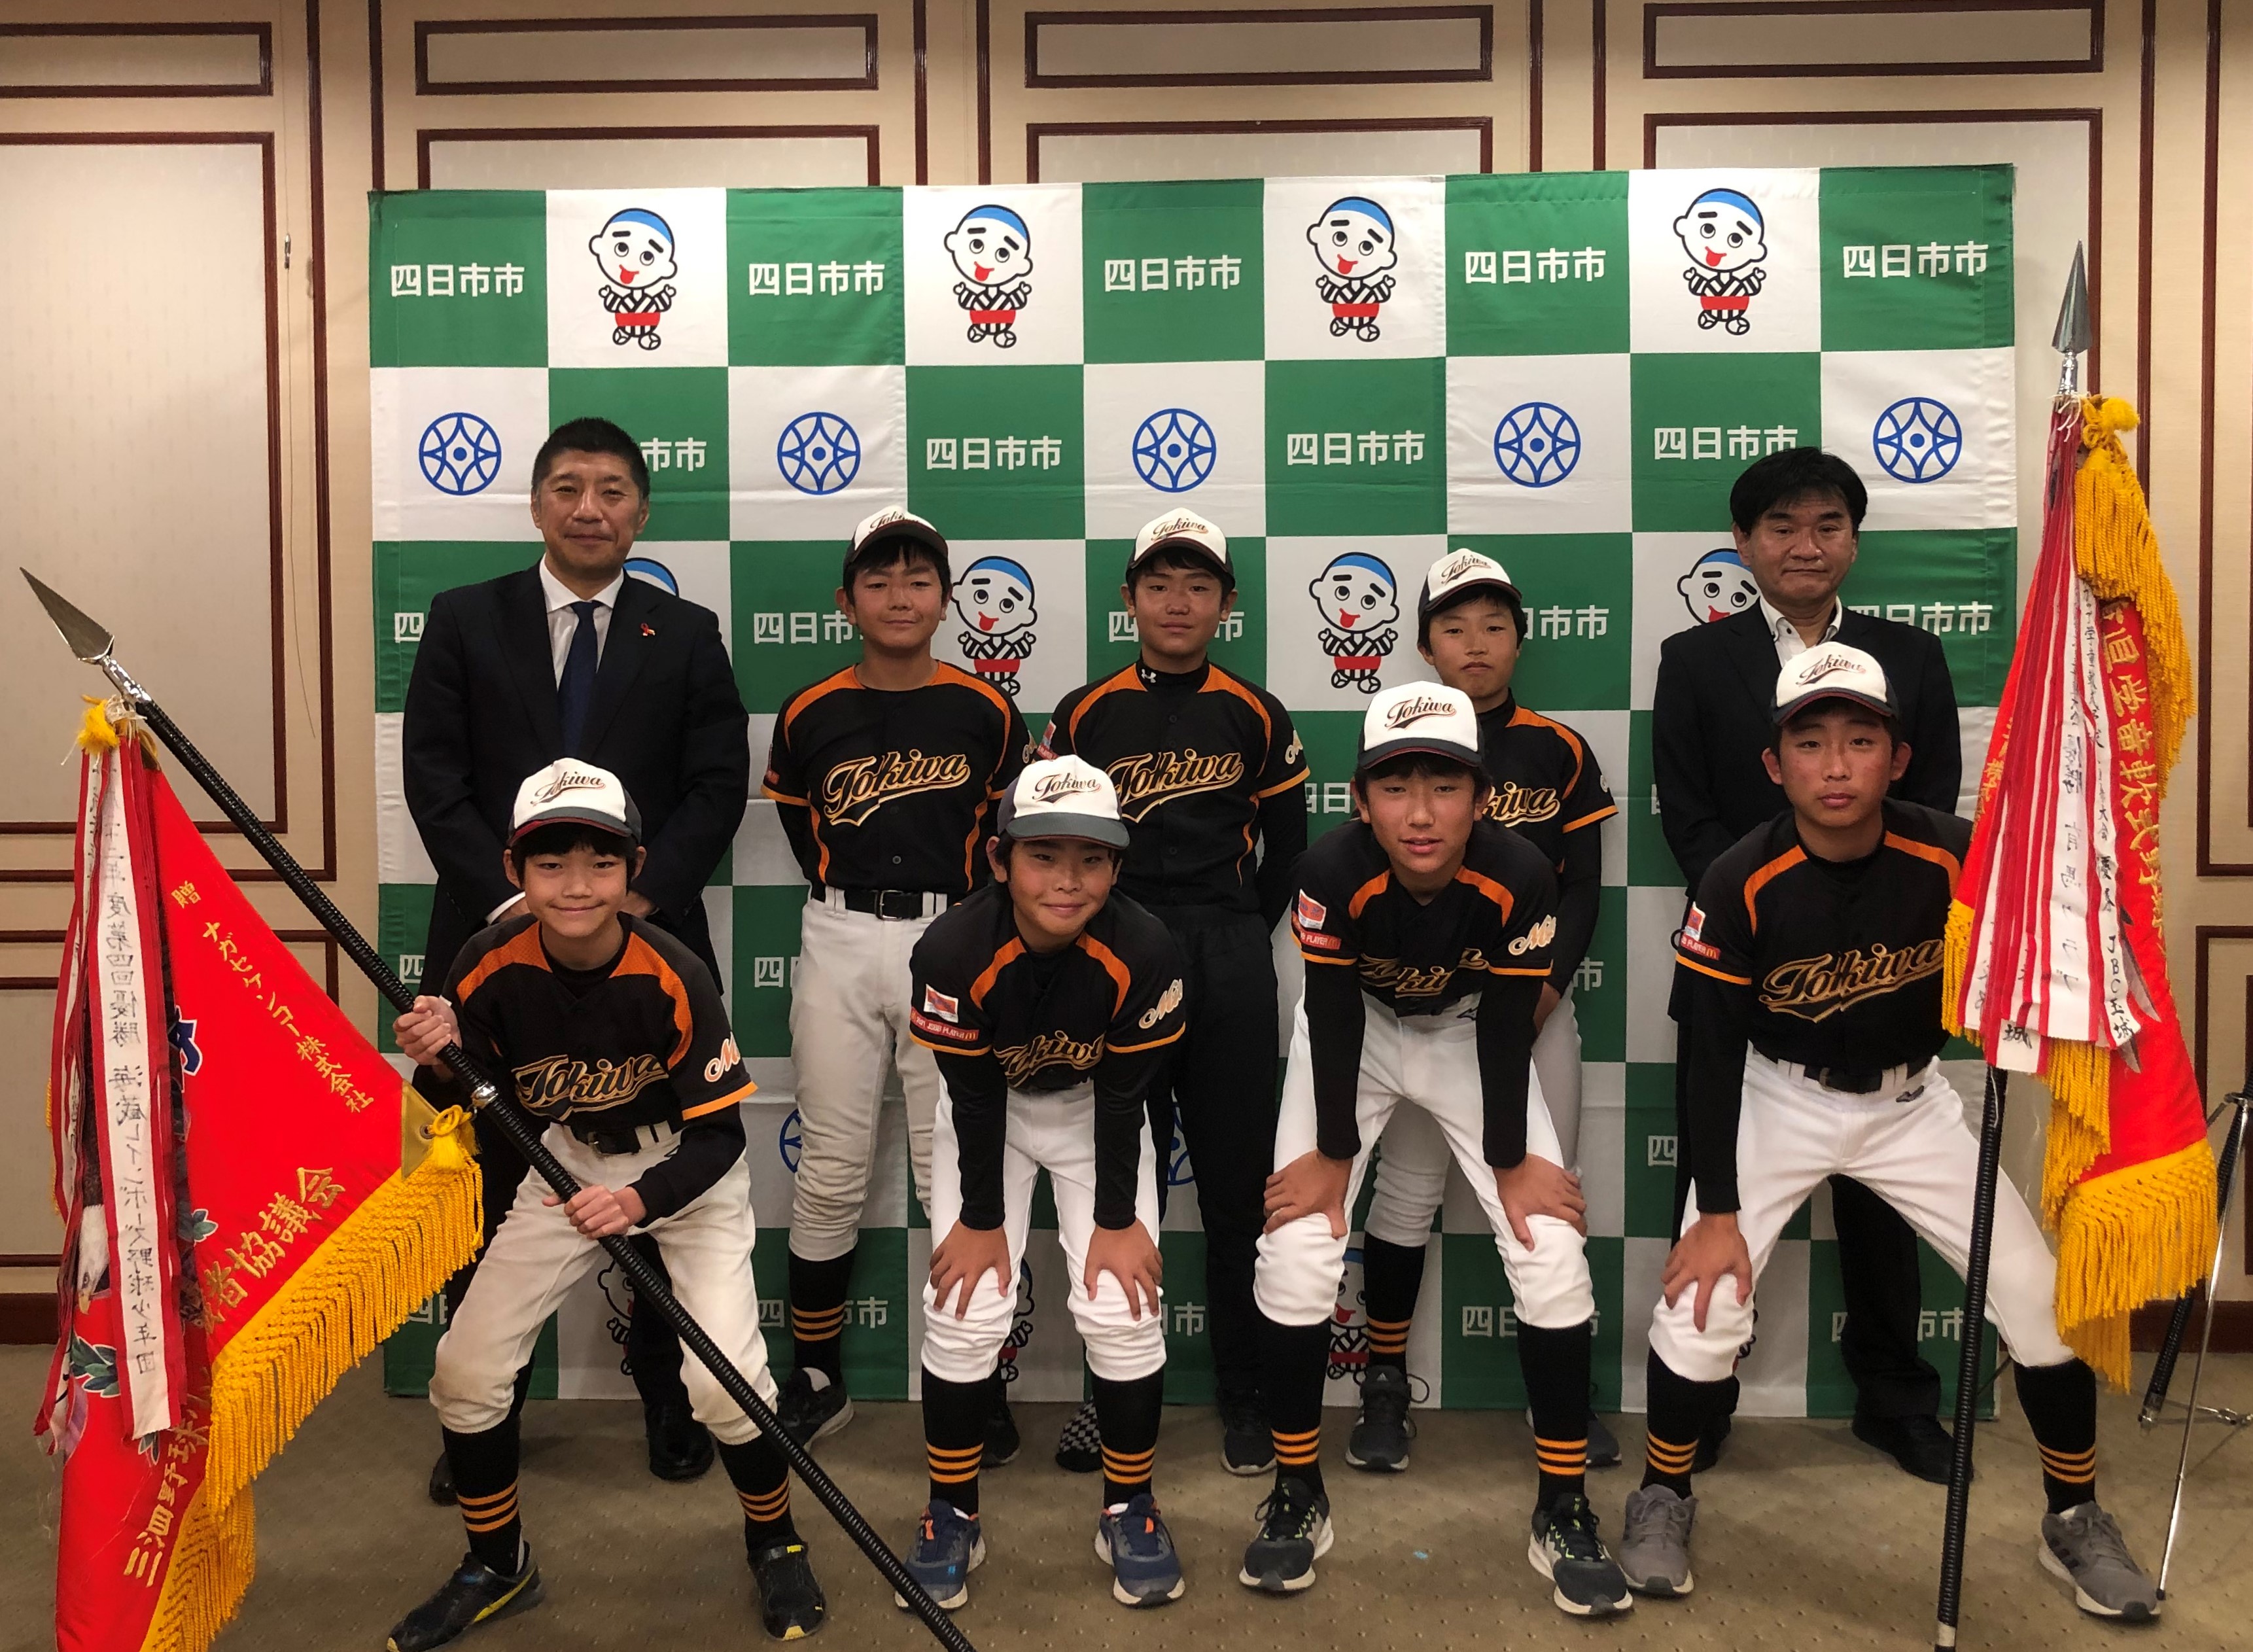 1121　三重県学童軟式野球選手権大会入賞選手表敬訪問